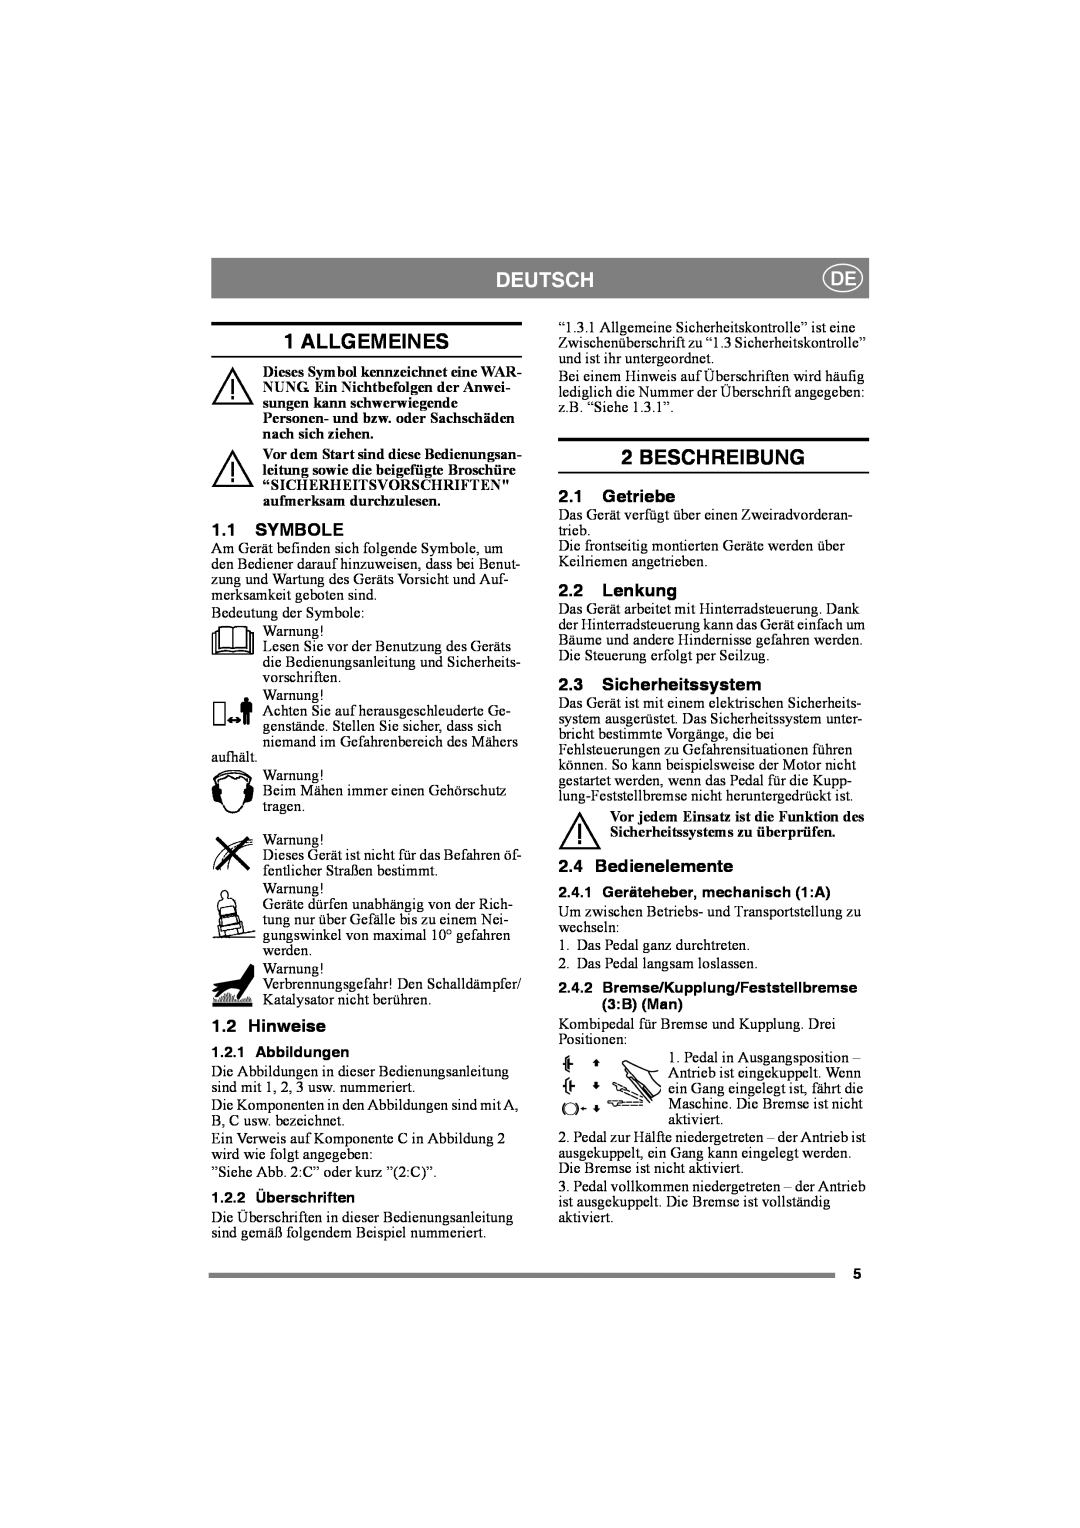 Stiga 8221-0034-80 manual Deutsch, Allgemeines, Beschreibung, Symbole, Hinweise, Getriebe, Lenkung, Sicherheitssystem 